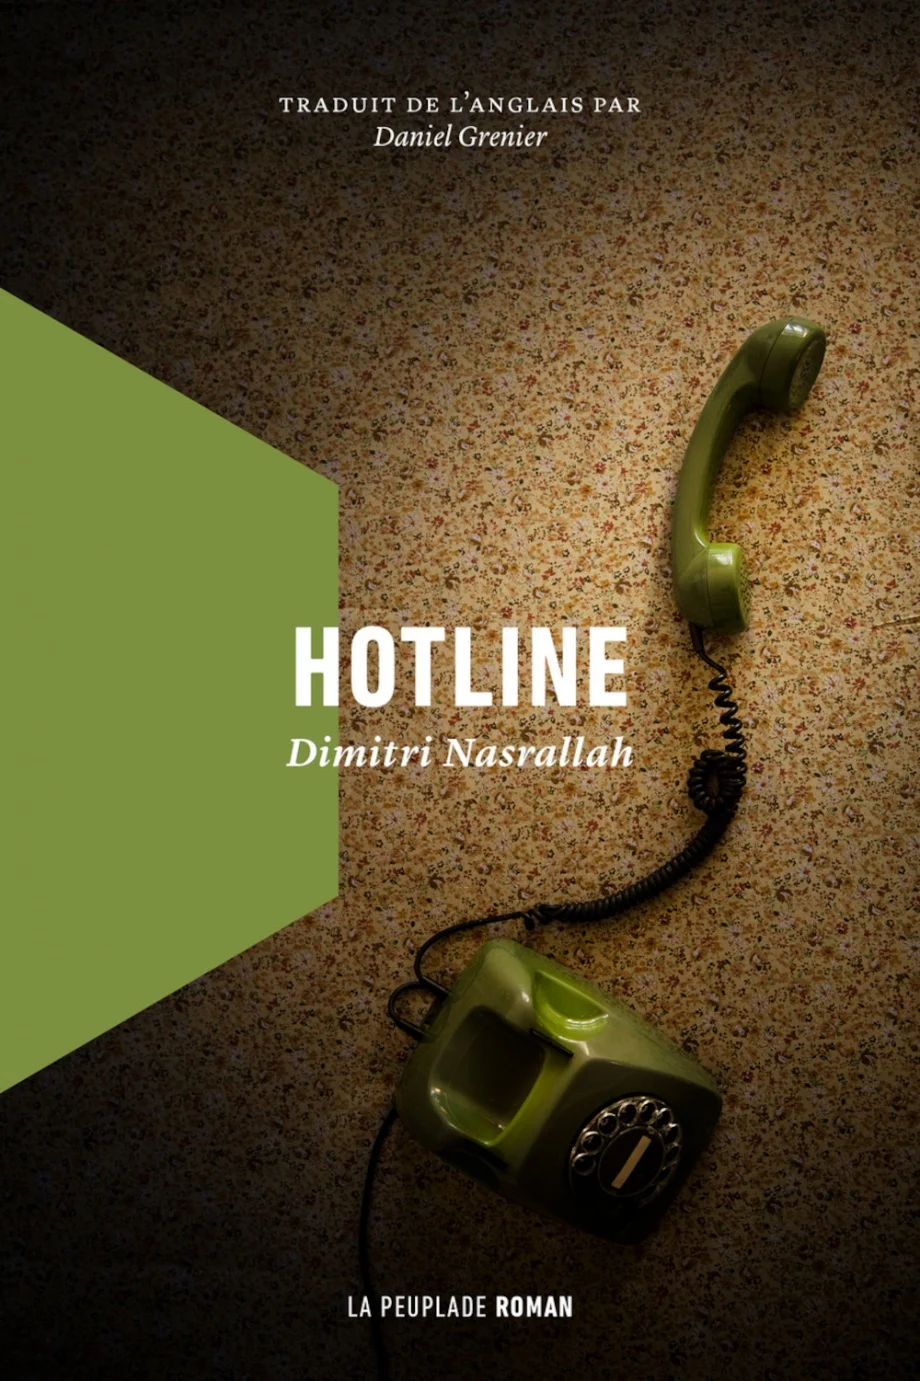 Couverture du livre Hotline par Dimitri Nasrallah.